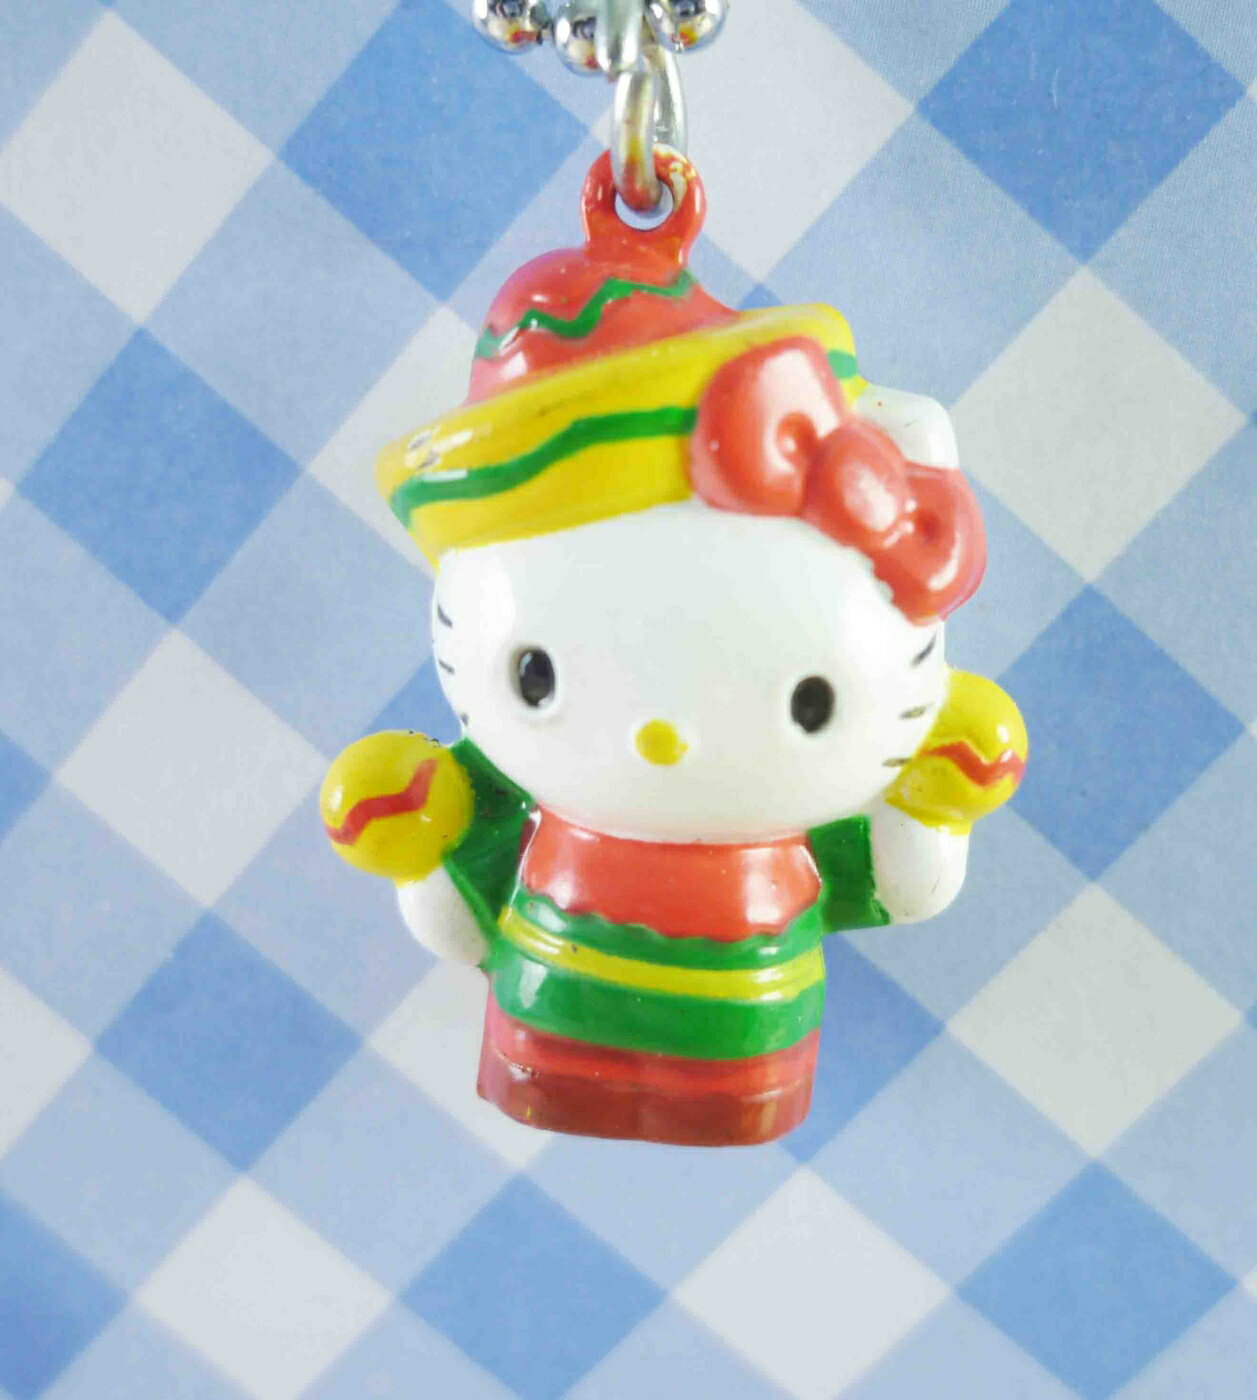 【震撼精品百貨】Hello Kitty 凱蒂貓 KITTY鑰匙圈-鎖圈吊飾-墨西哥 震撼日式精品百貨